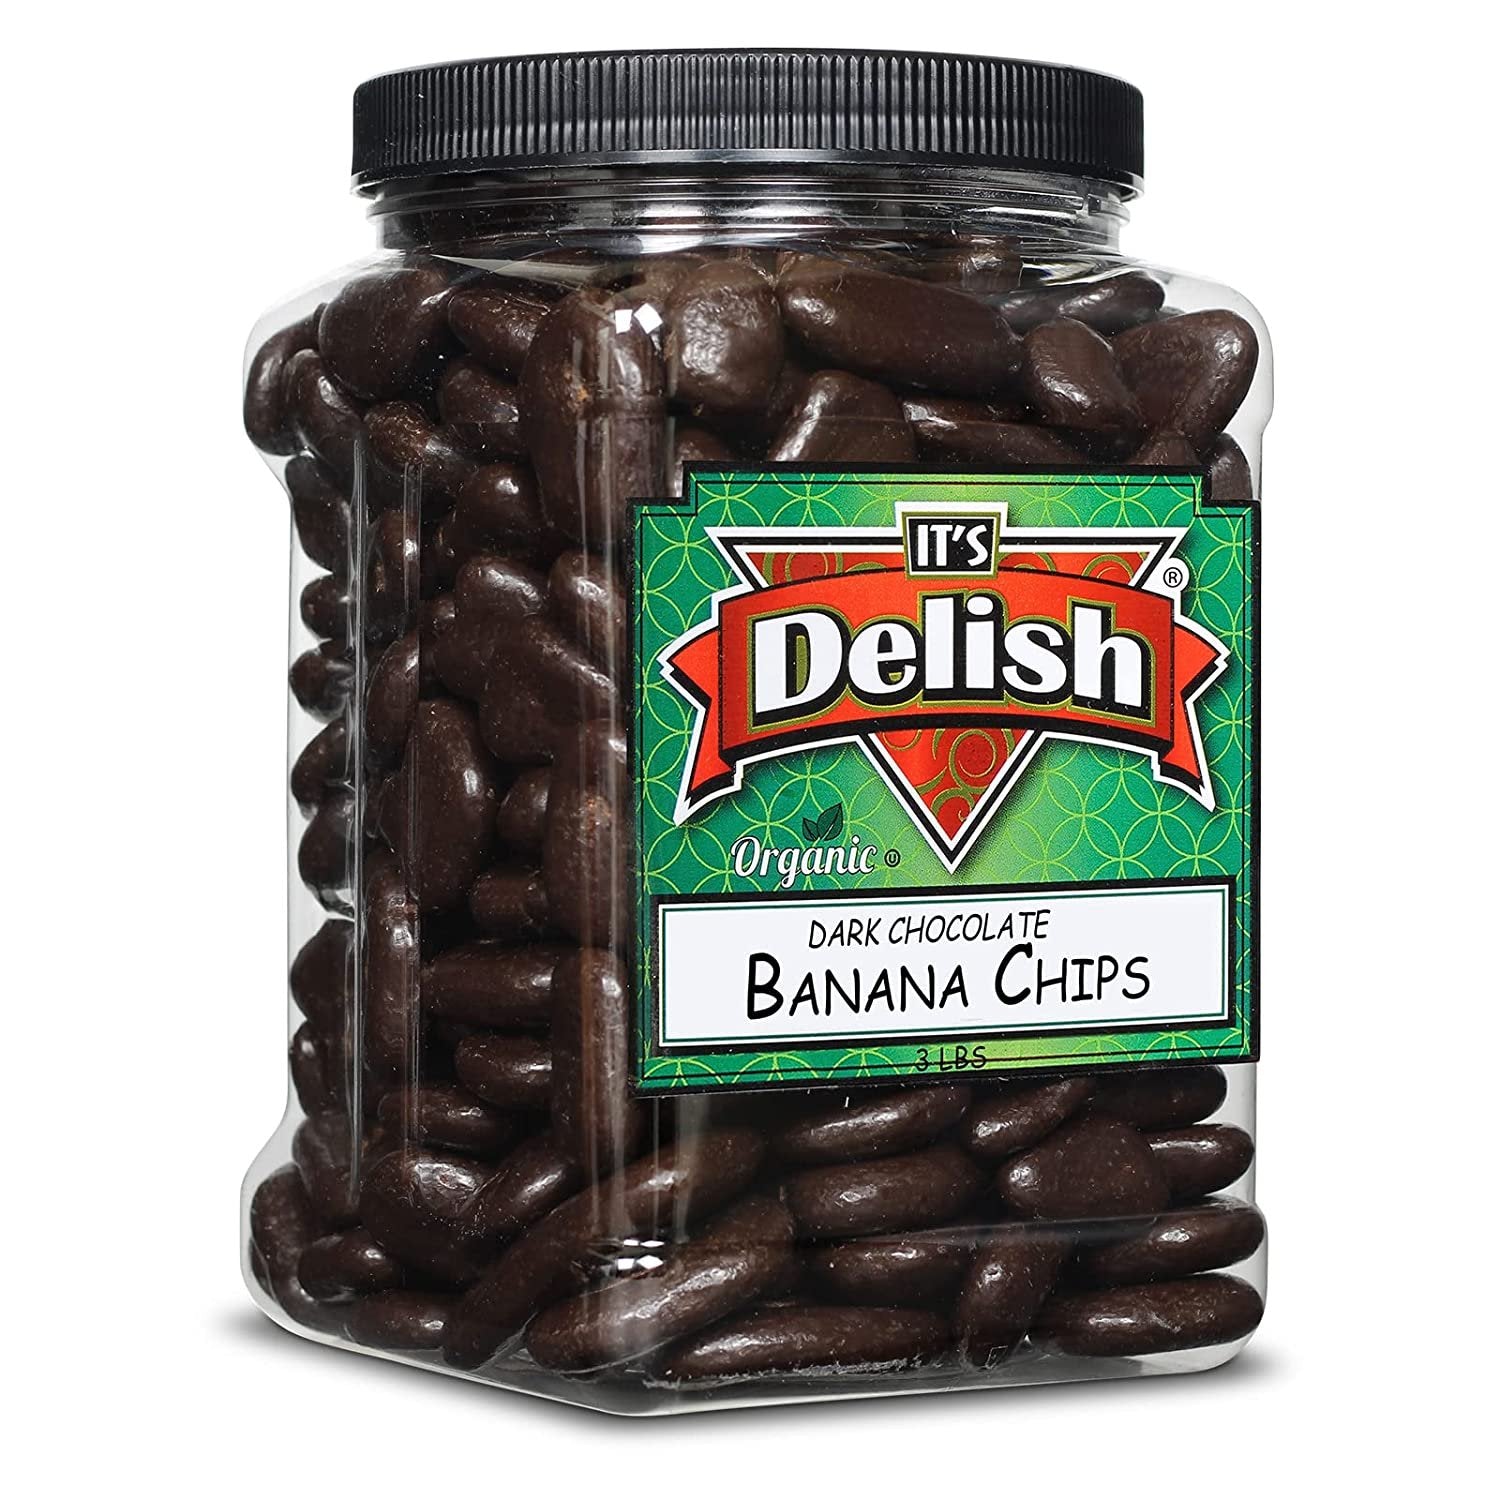 Organic Dark Chocolate Banana Chips 3 LBS Jumbo Container Jar